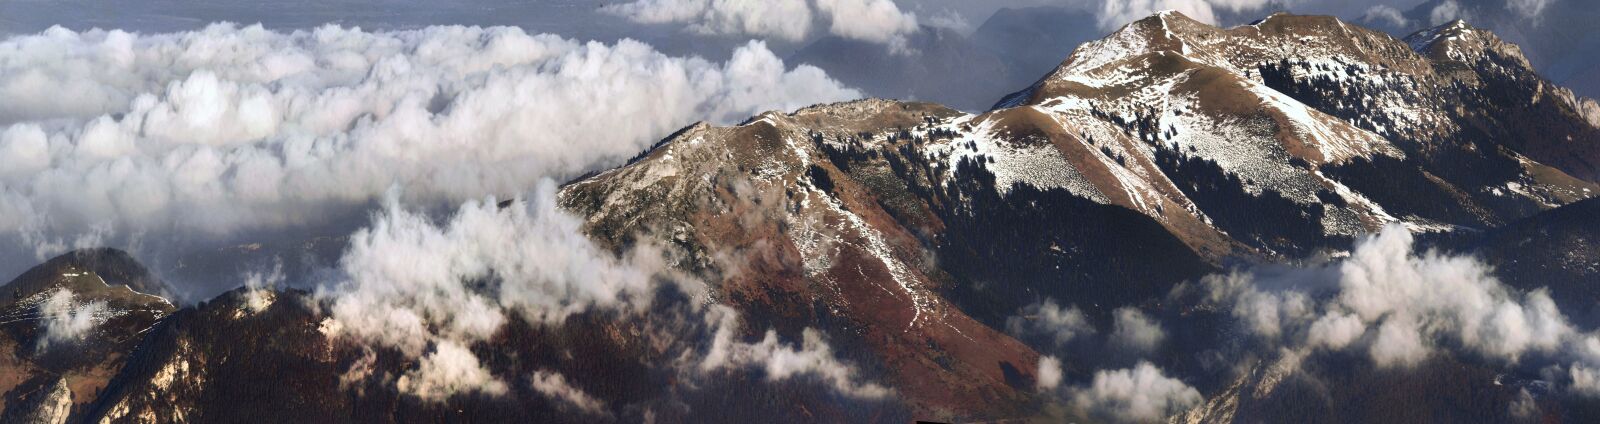 Nikon D3 sample photo. Mountain, clouds, nature photography